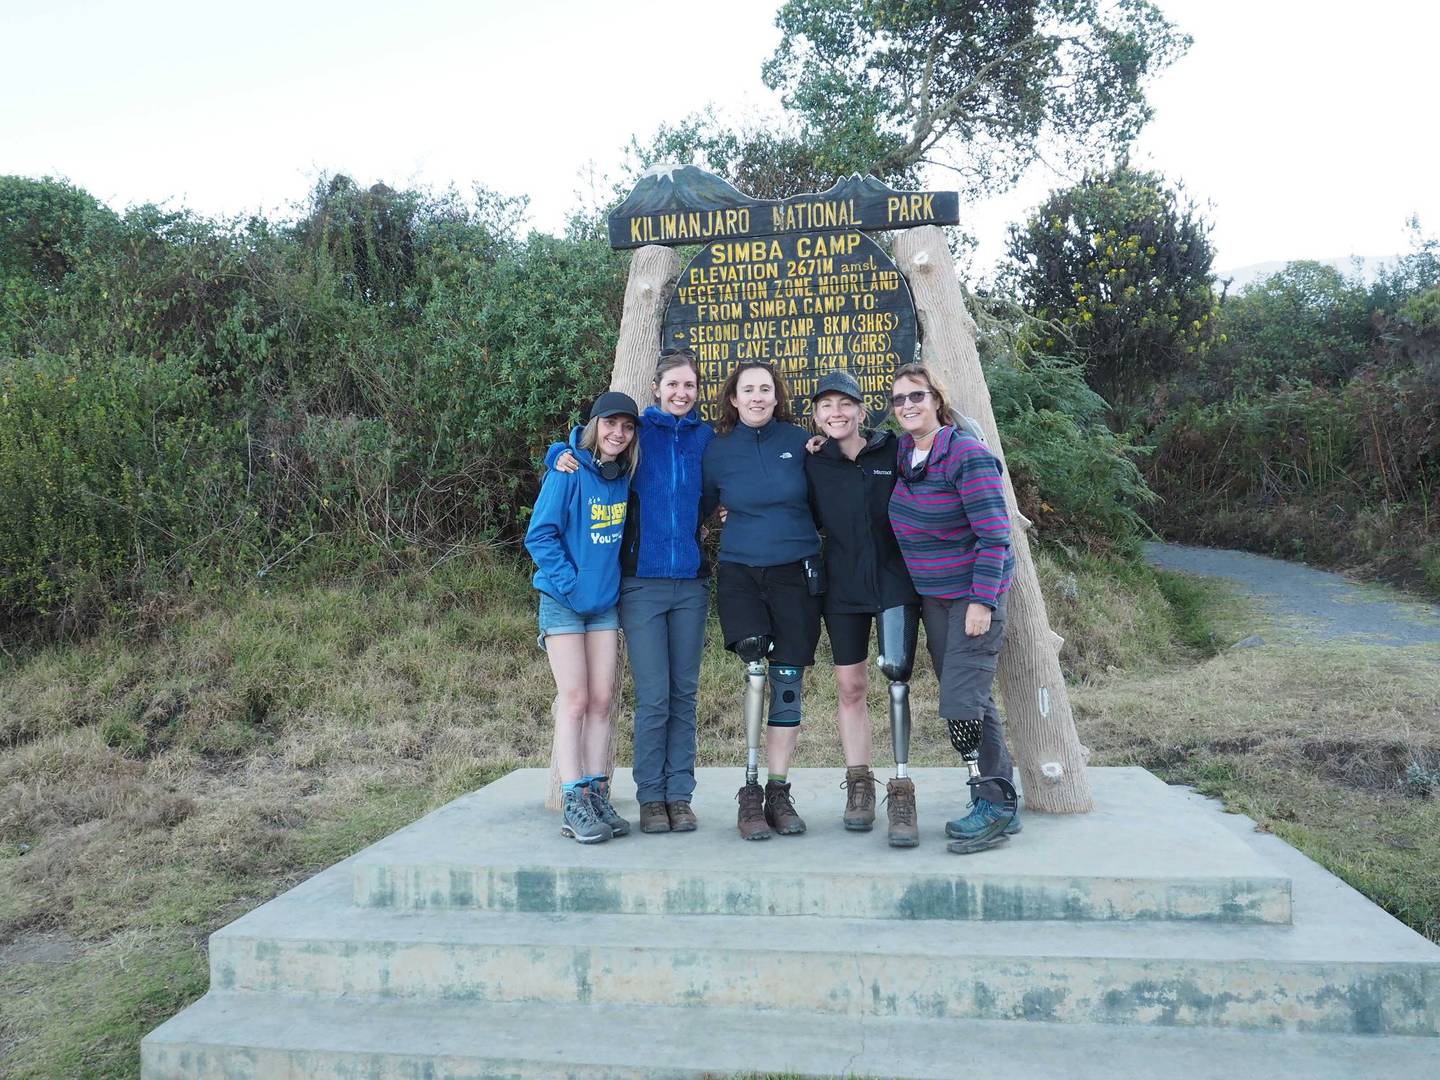 Some of the amputee individuals at Kilimanjaro's Simba Camp 